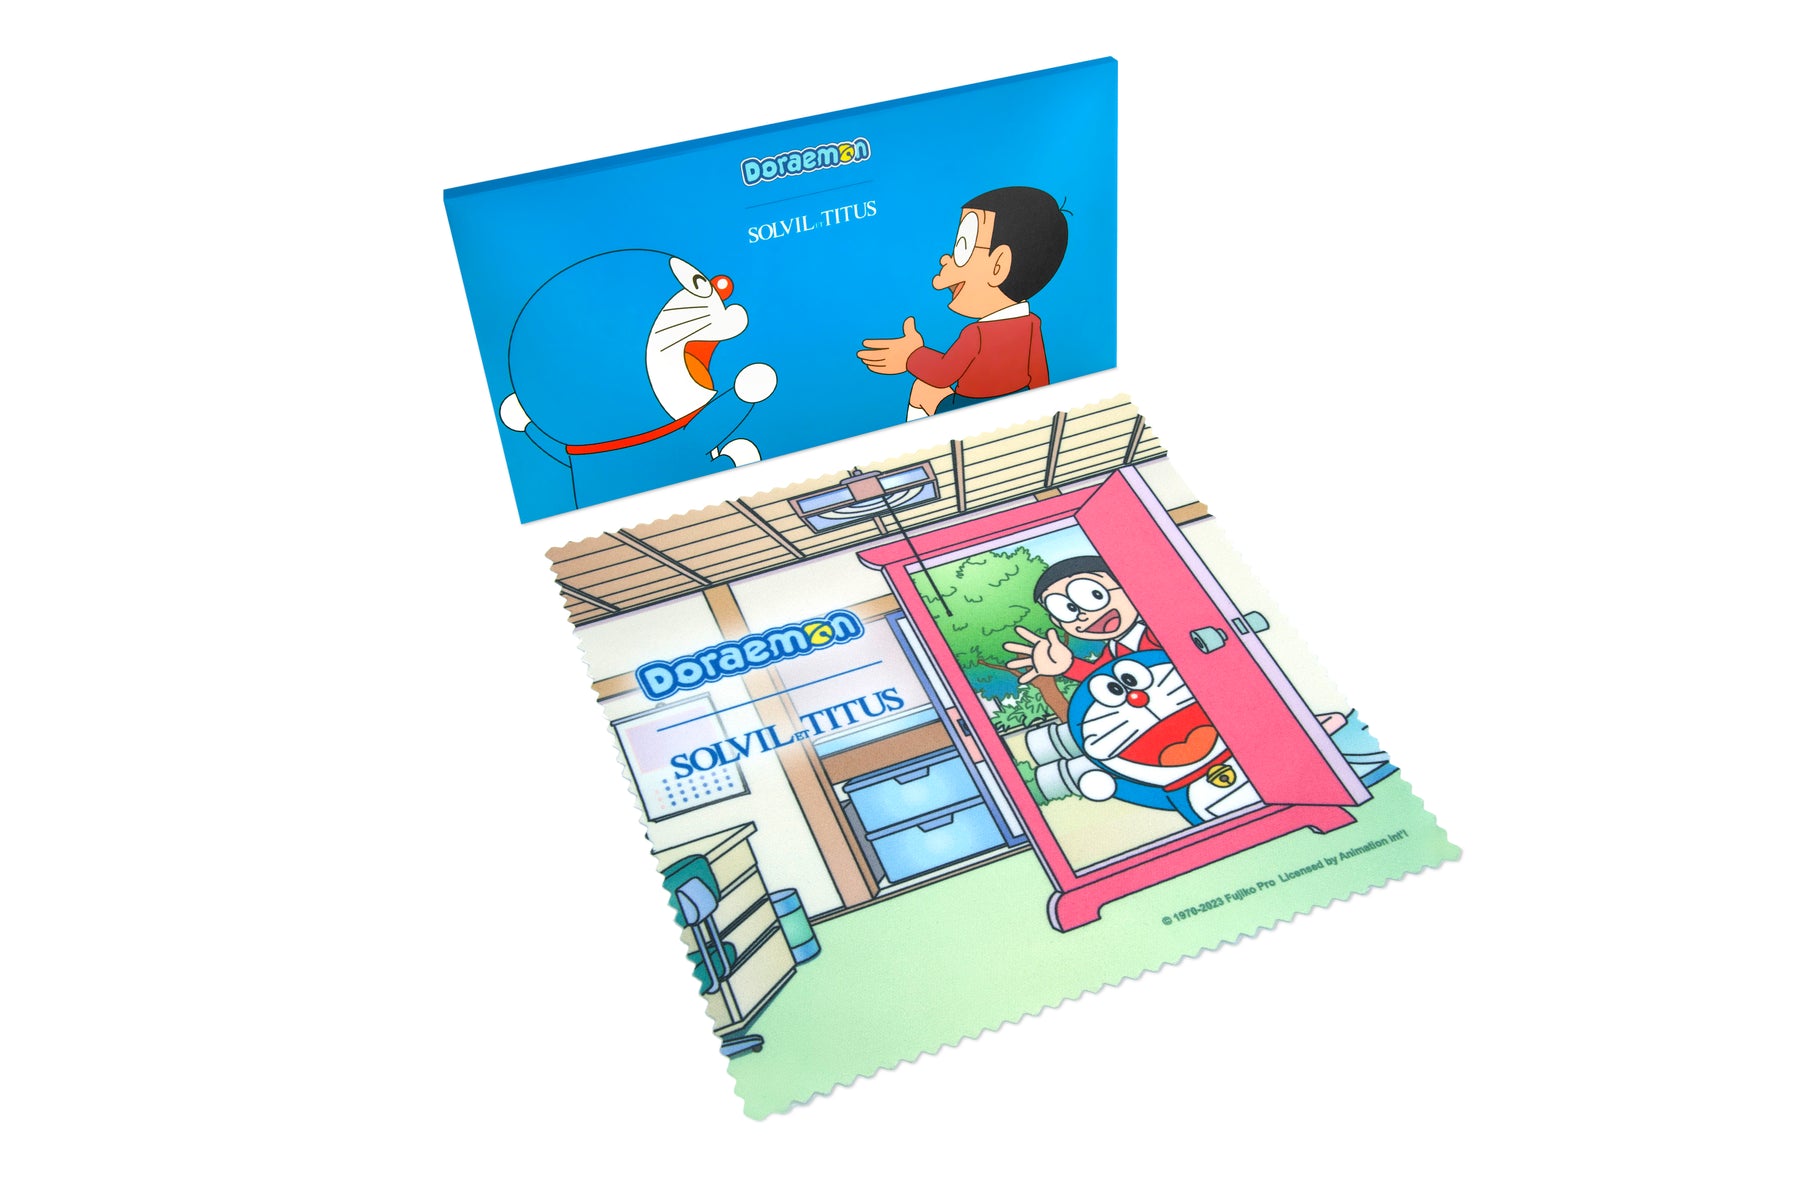 Solvil et Titus x Doraemon Limited Edition Chronograph Quartz Stainless Steel Men Watch W06-03315-001